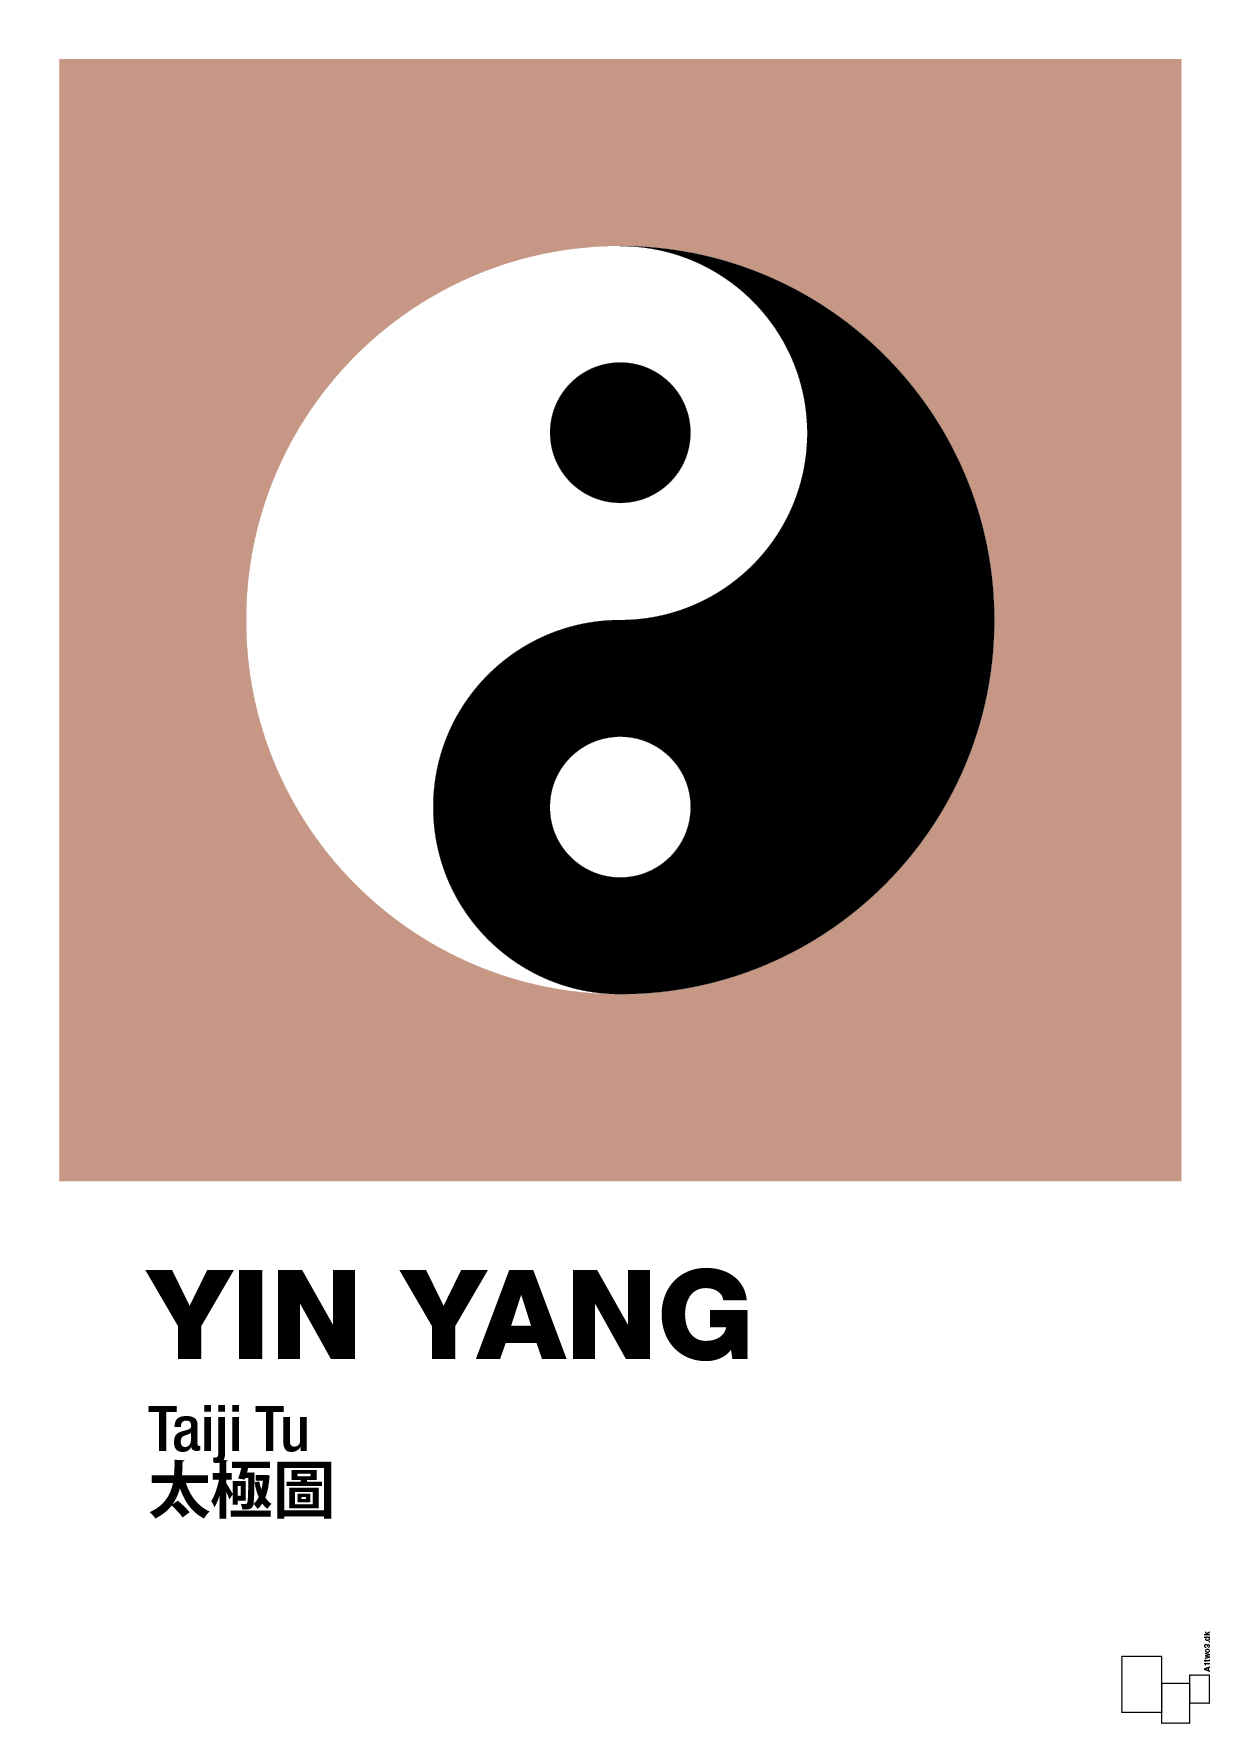 yin yang - Plakat med Videnskab i Powder